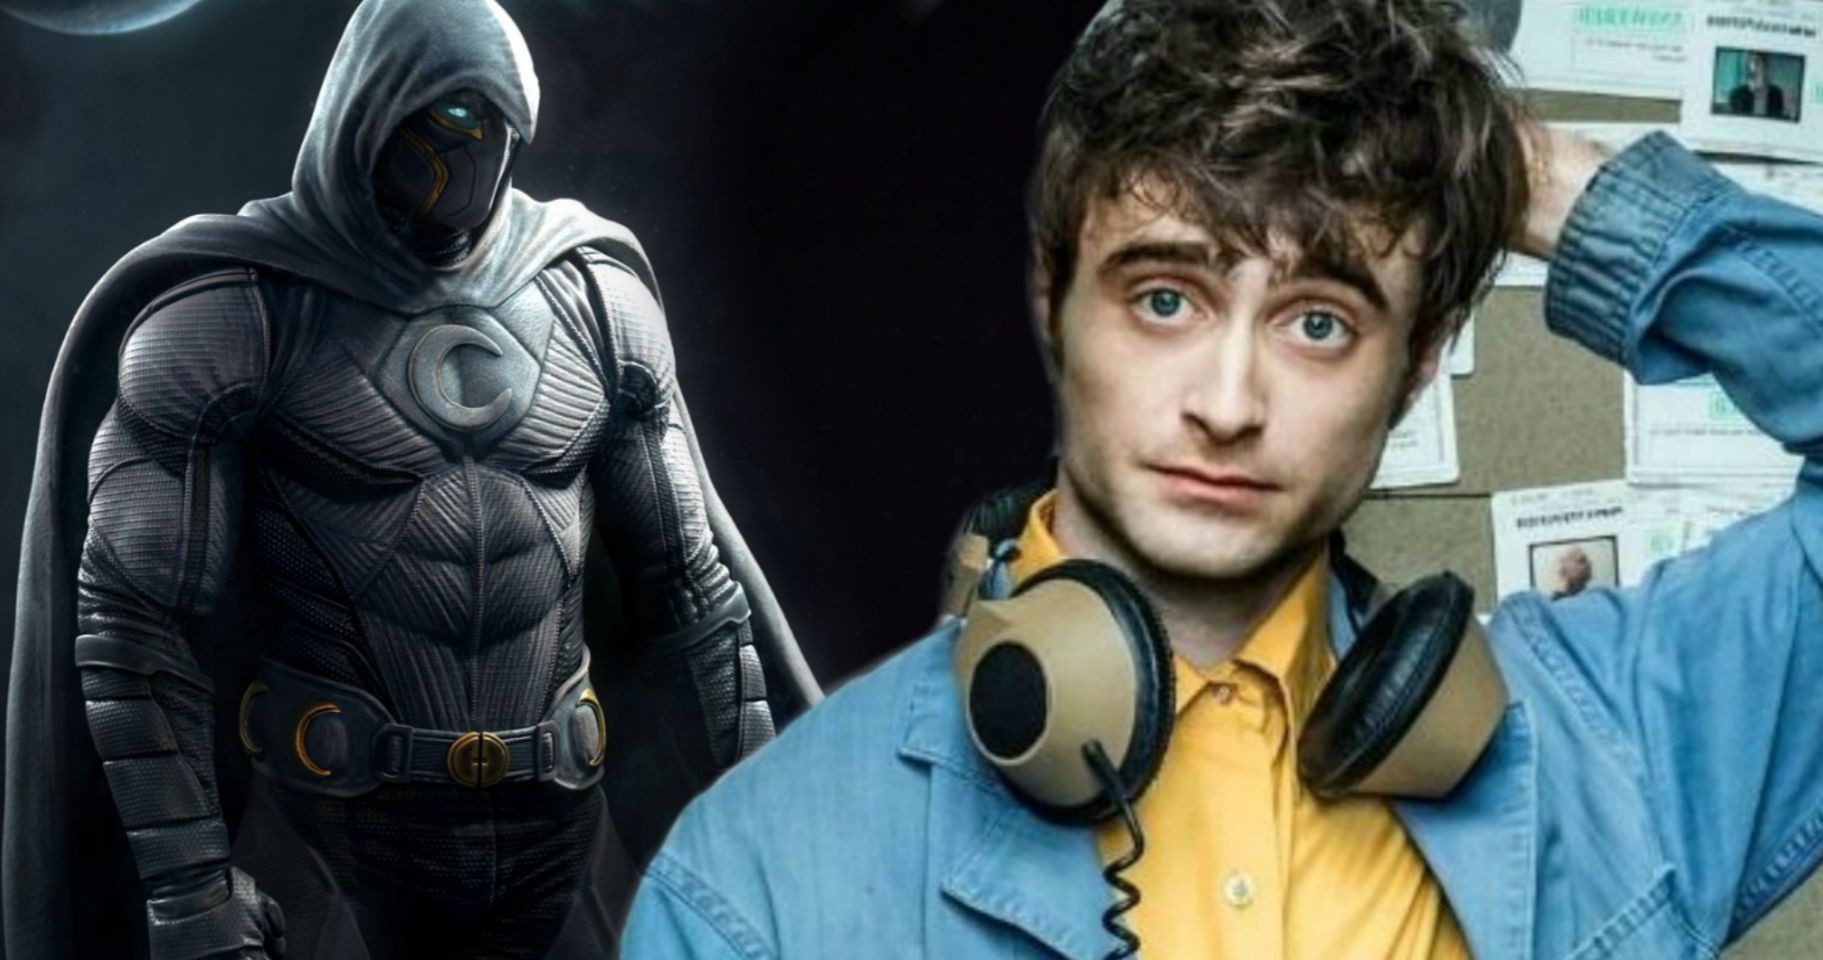 Moon Knight Disney+ Series Wants Daniel Radcliffe as Marc Specter?